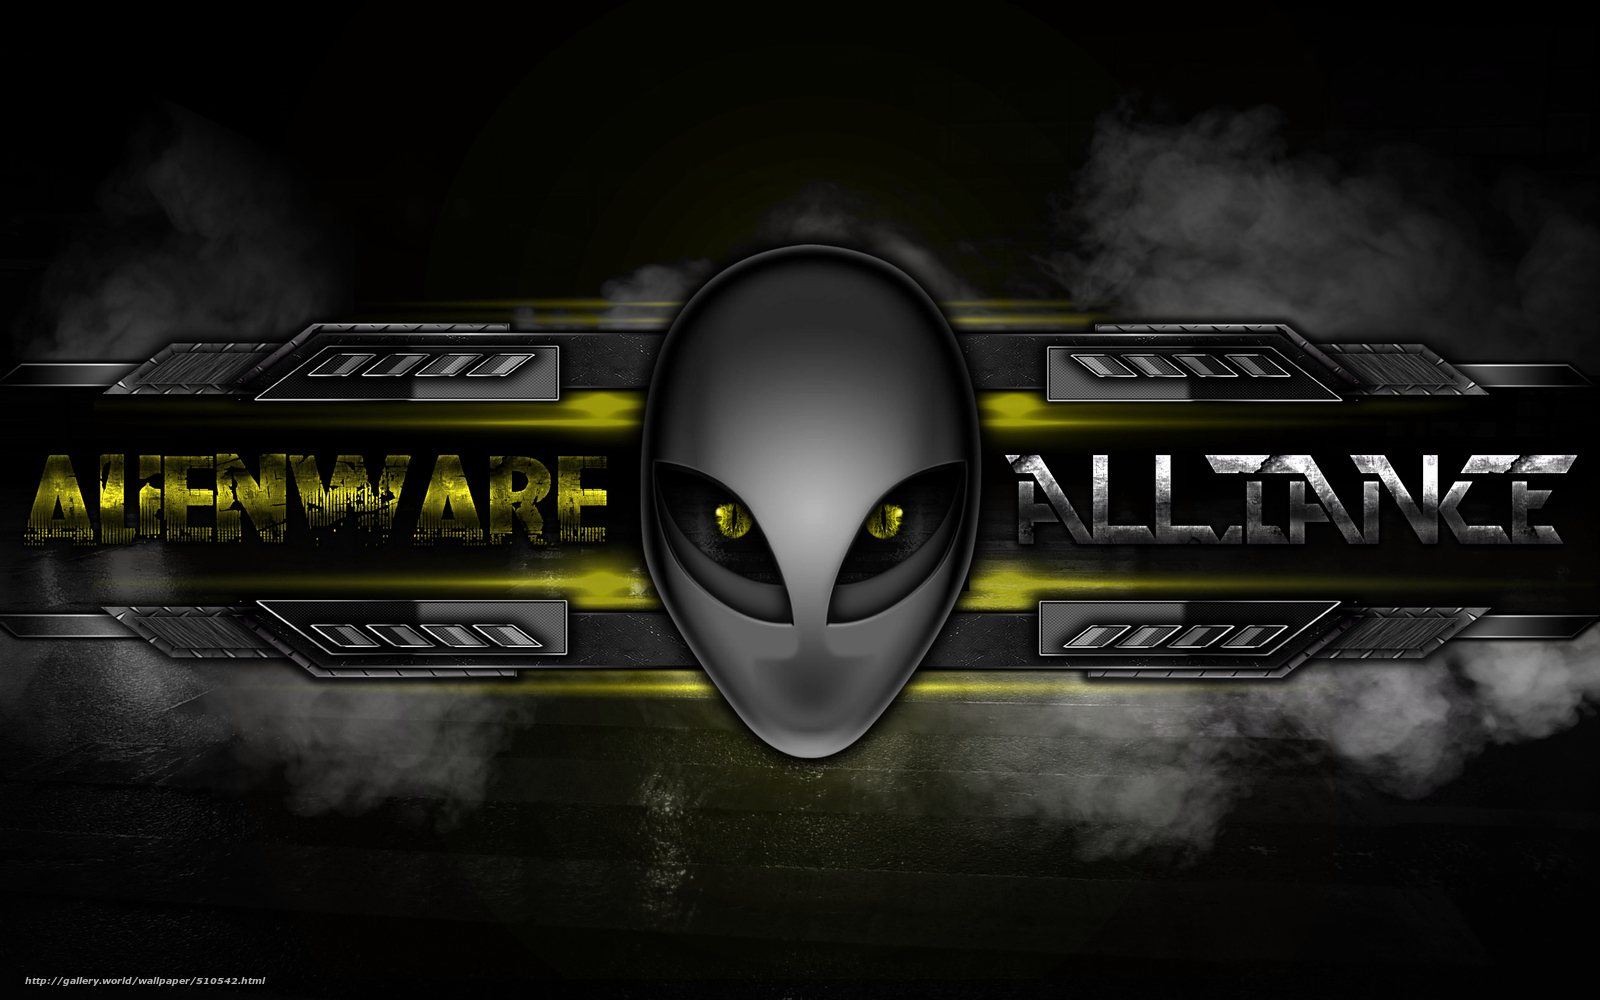 Wallpaper Alienware Alliance 3d Desktop In